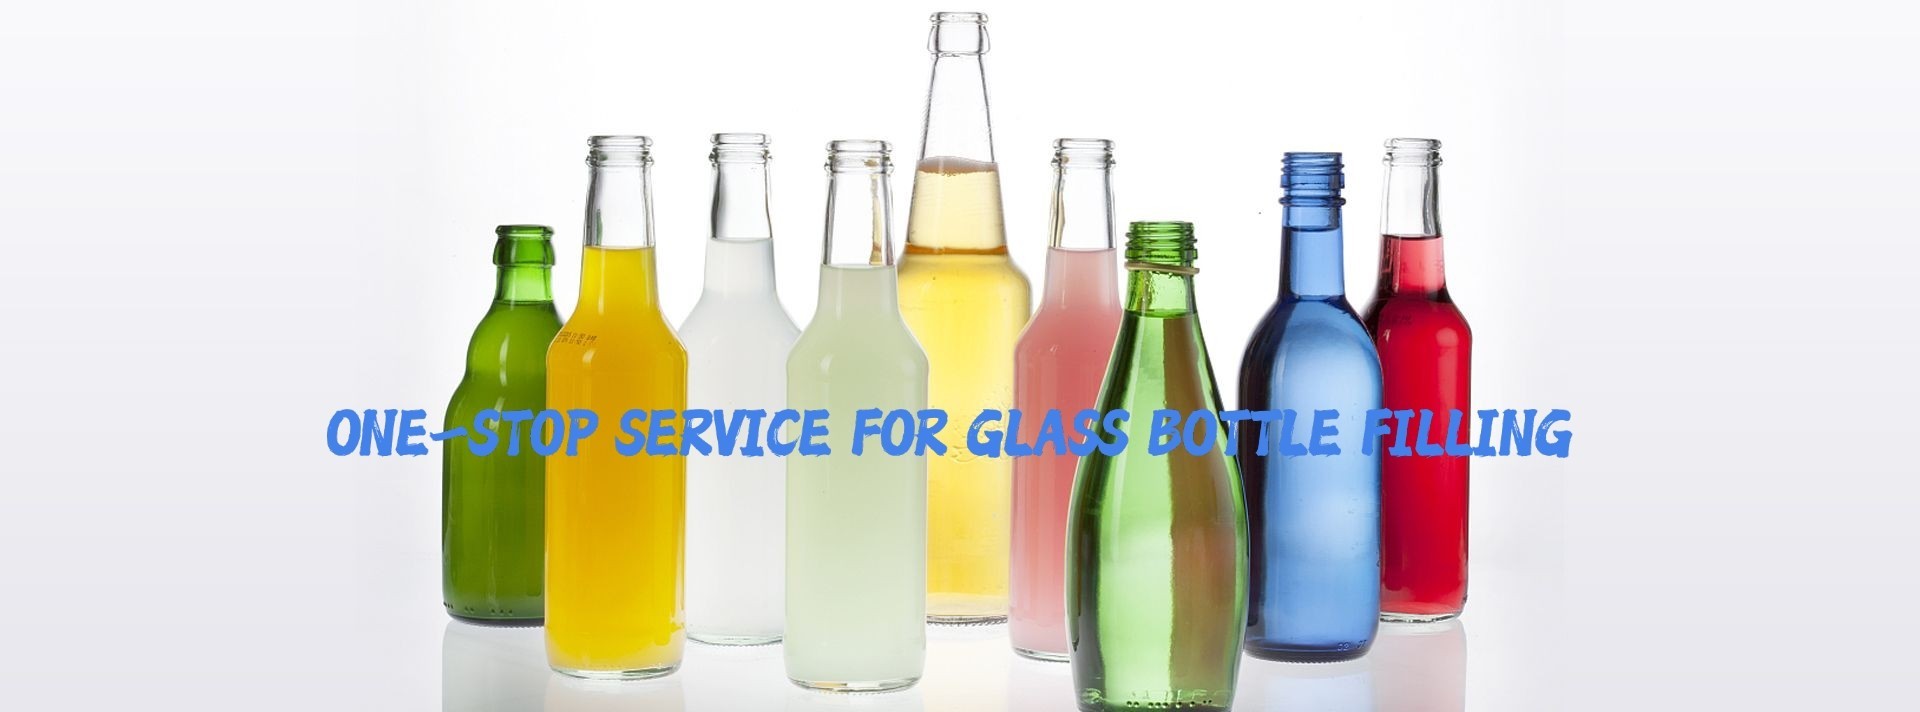 品質 ガラス ビンの満ちるライン サービス